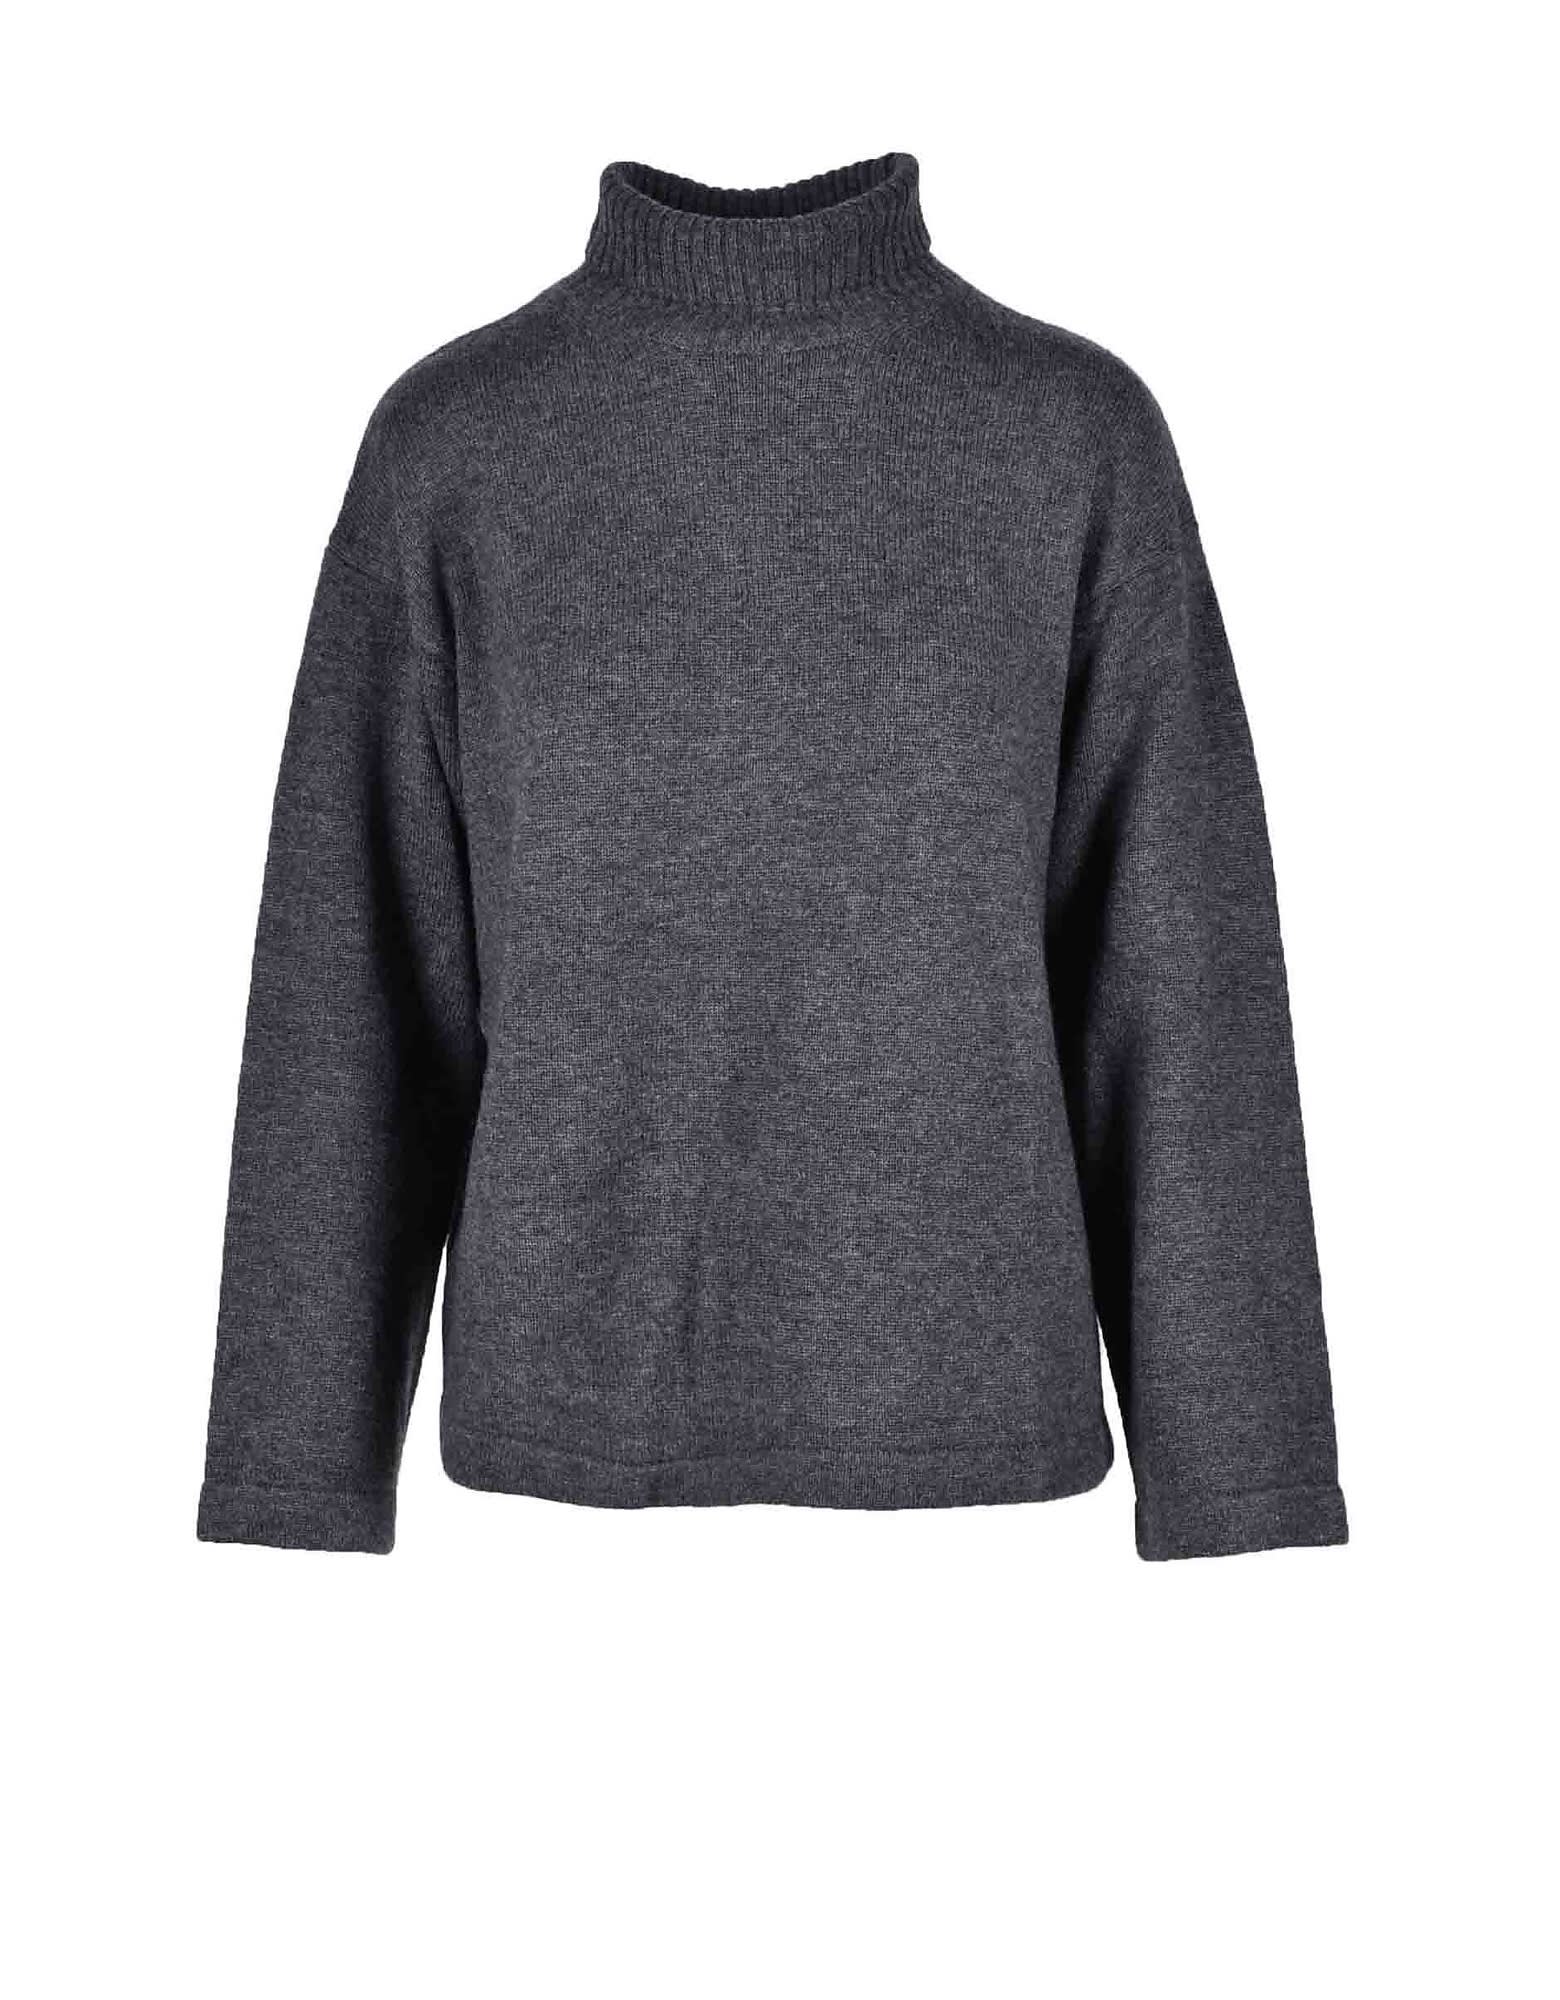 Max Mara Womens Gray Sweater